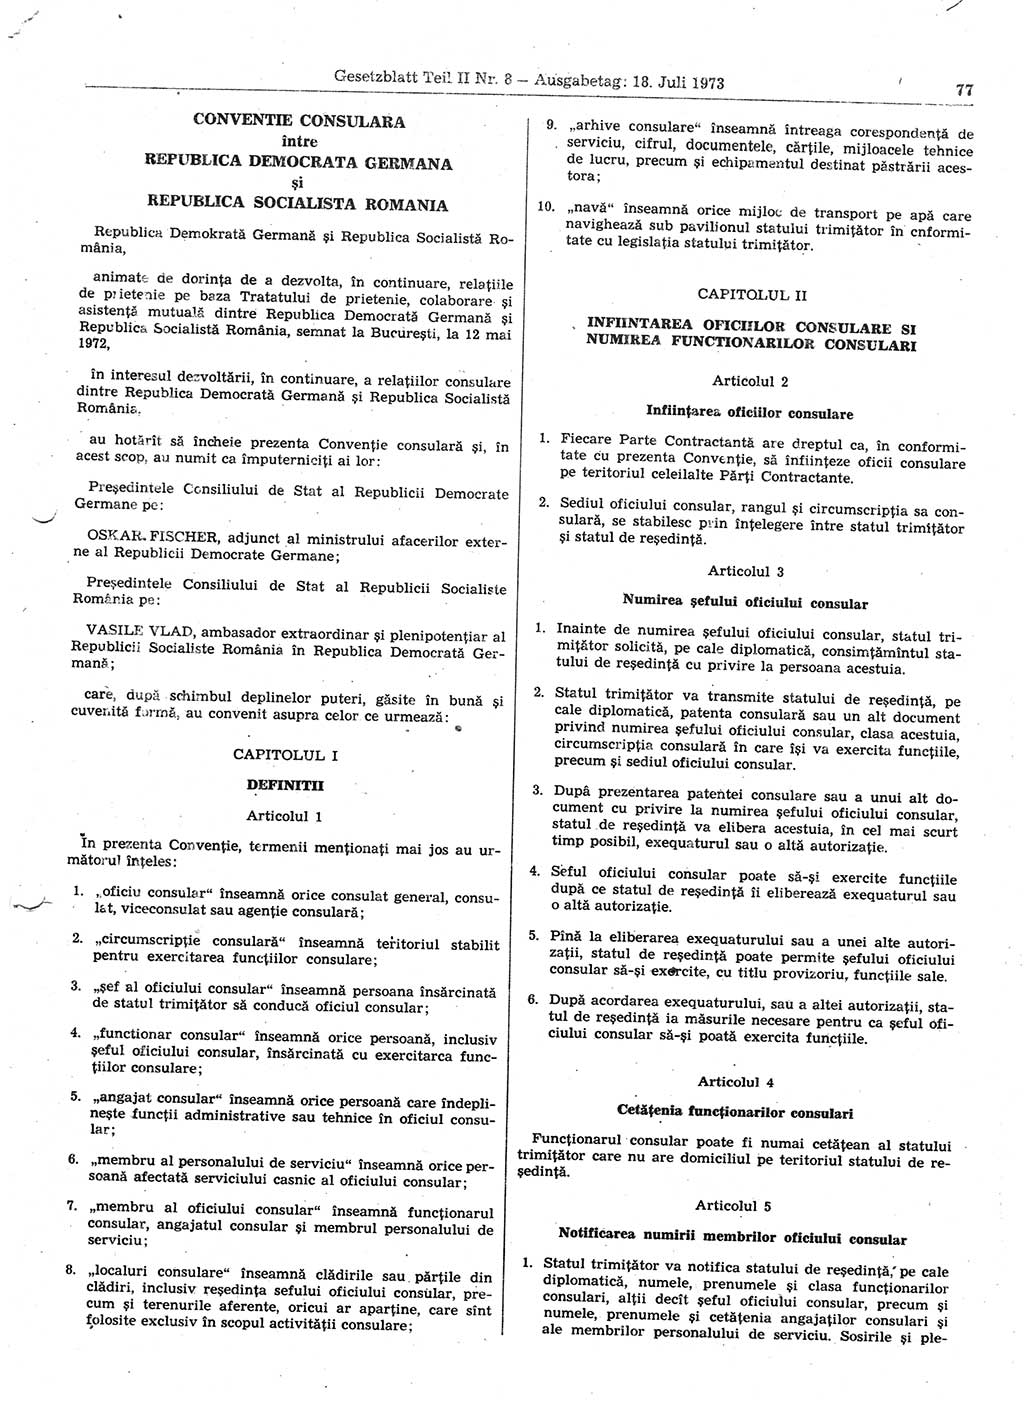 Gesetzblatt (GBl.) der Deutschen Demokratischen Republik (DDR) Teil ⅠⅠ 1973, Seite 77 (GBl. DDR ⅠⅠ 1973, S. 77)